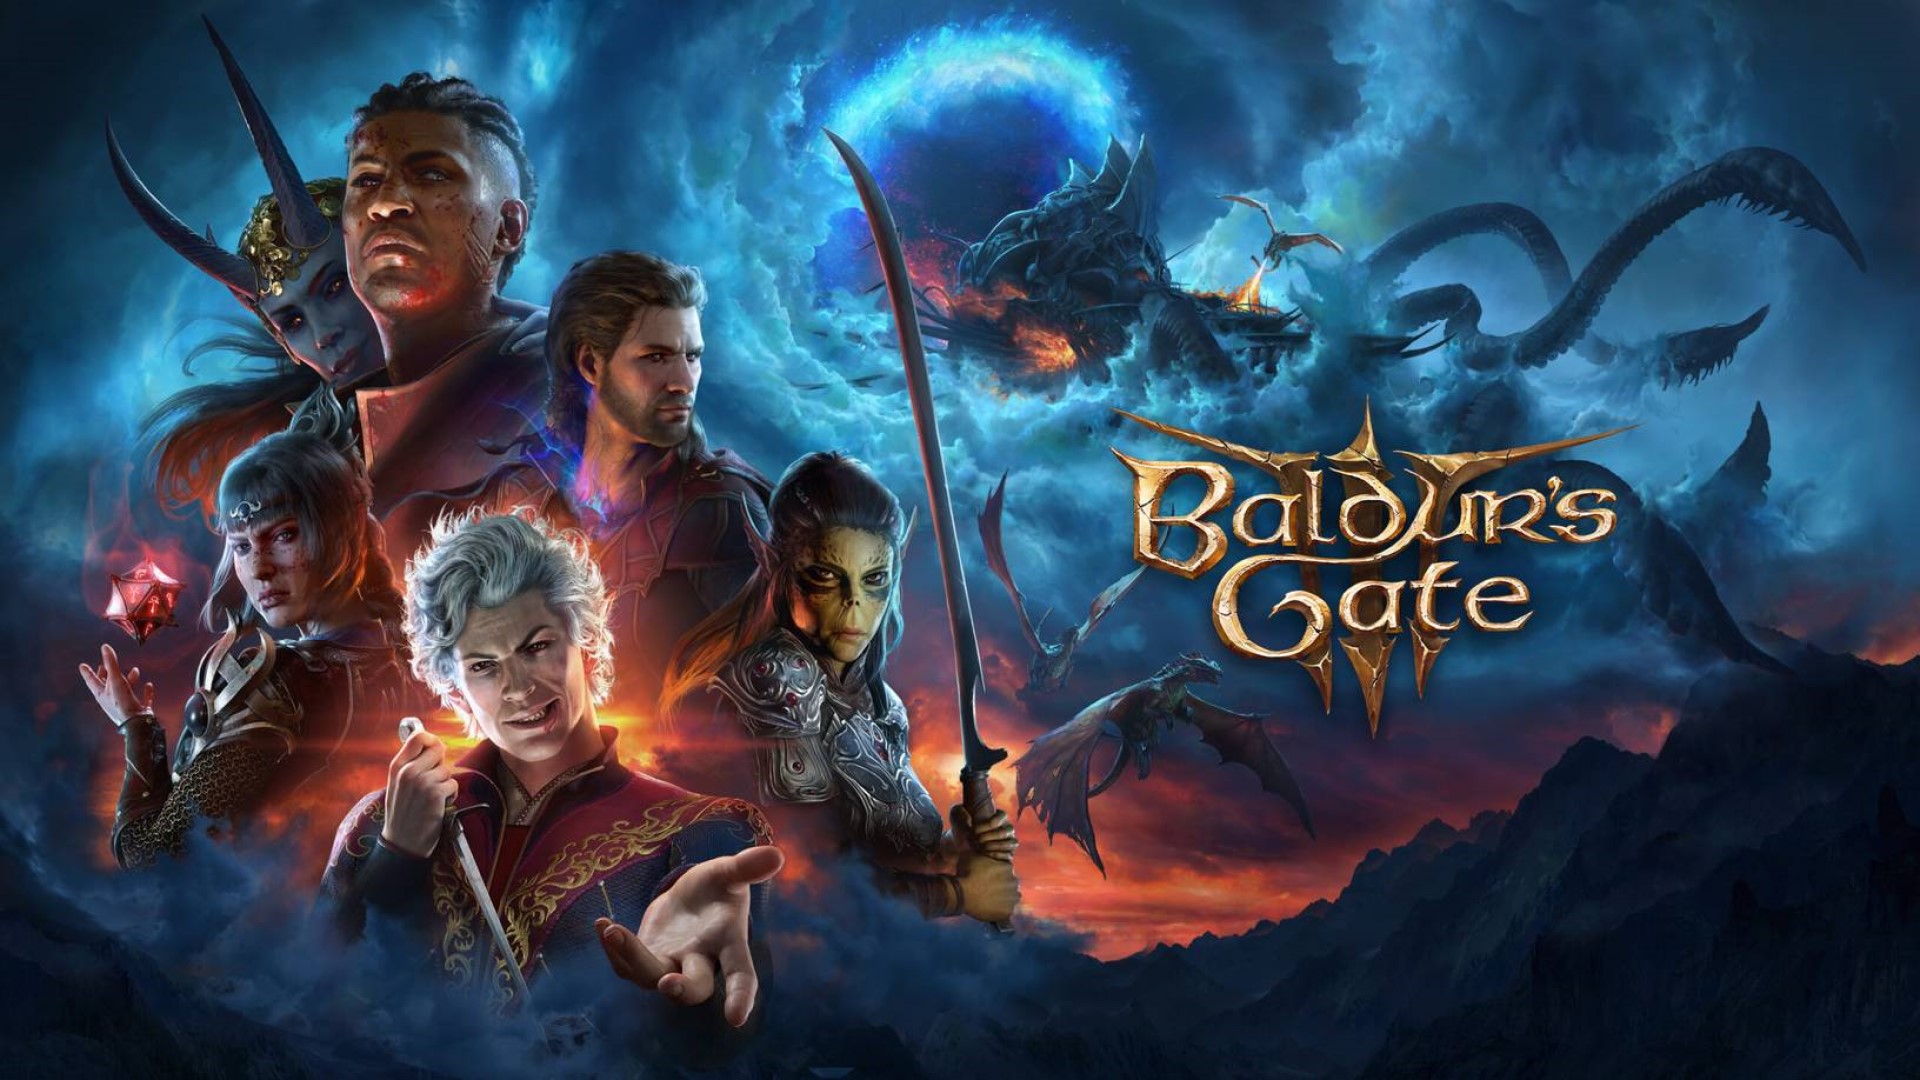 Baldur's Gate III will get more ominous endings, - says the head of Larian Studios